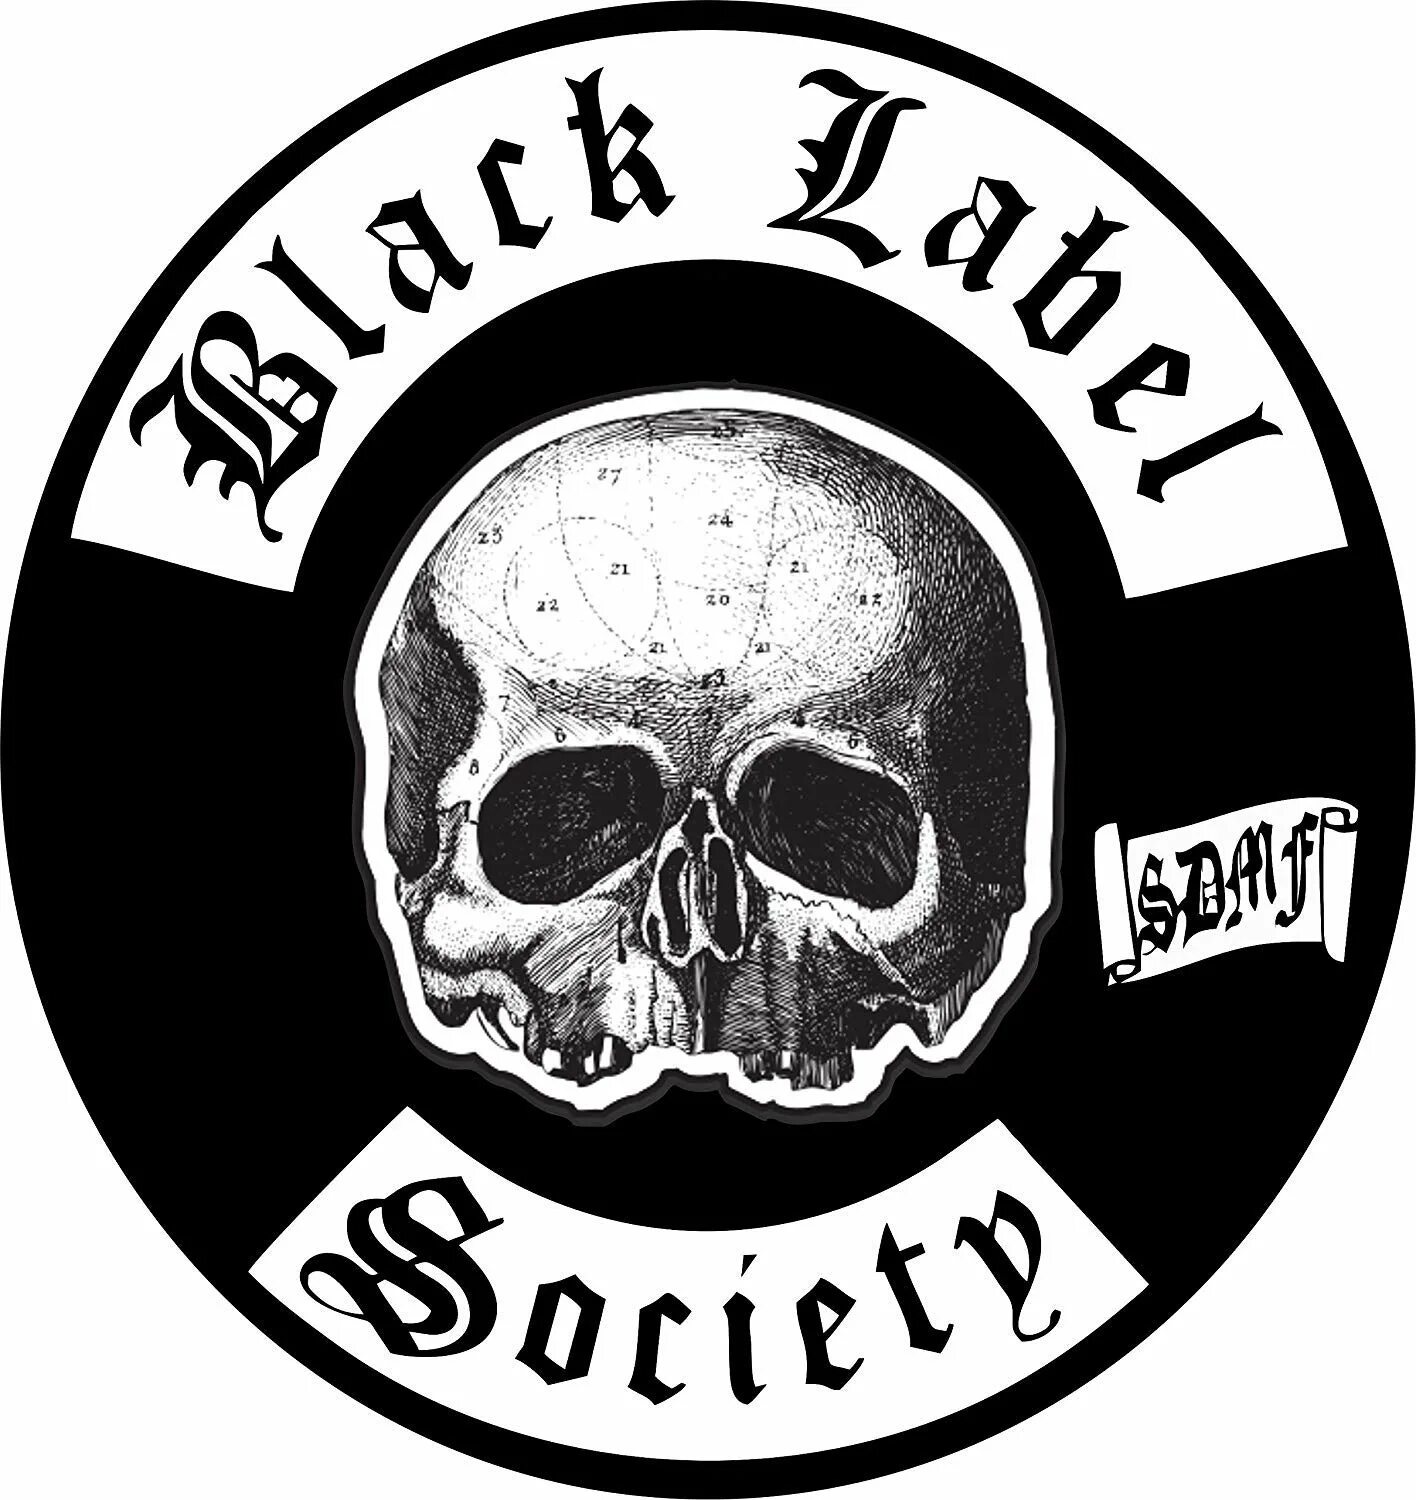 Логотип Black Label Society - Doom Crew Inc.. Black Label Society логотип. Black Label Society винил. Greatest Hits Black Label Society винил. Черный лейбл